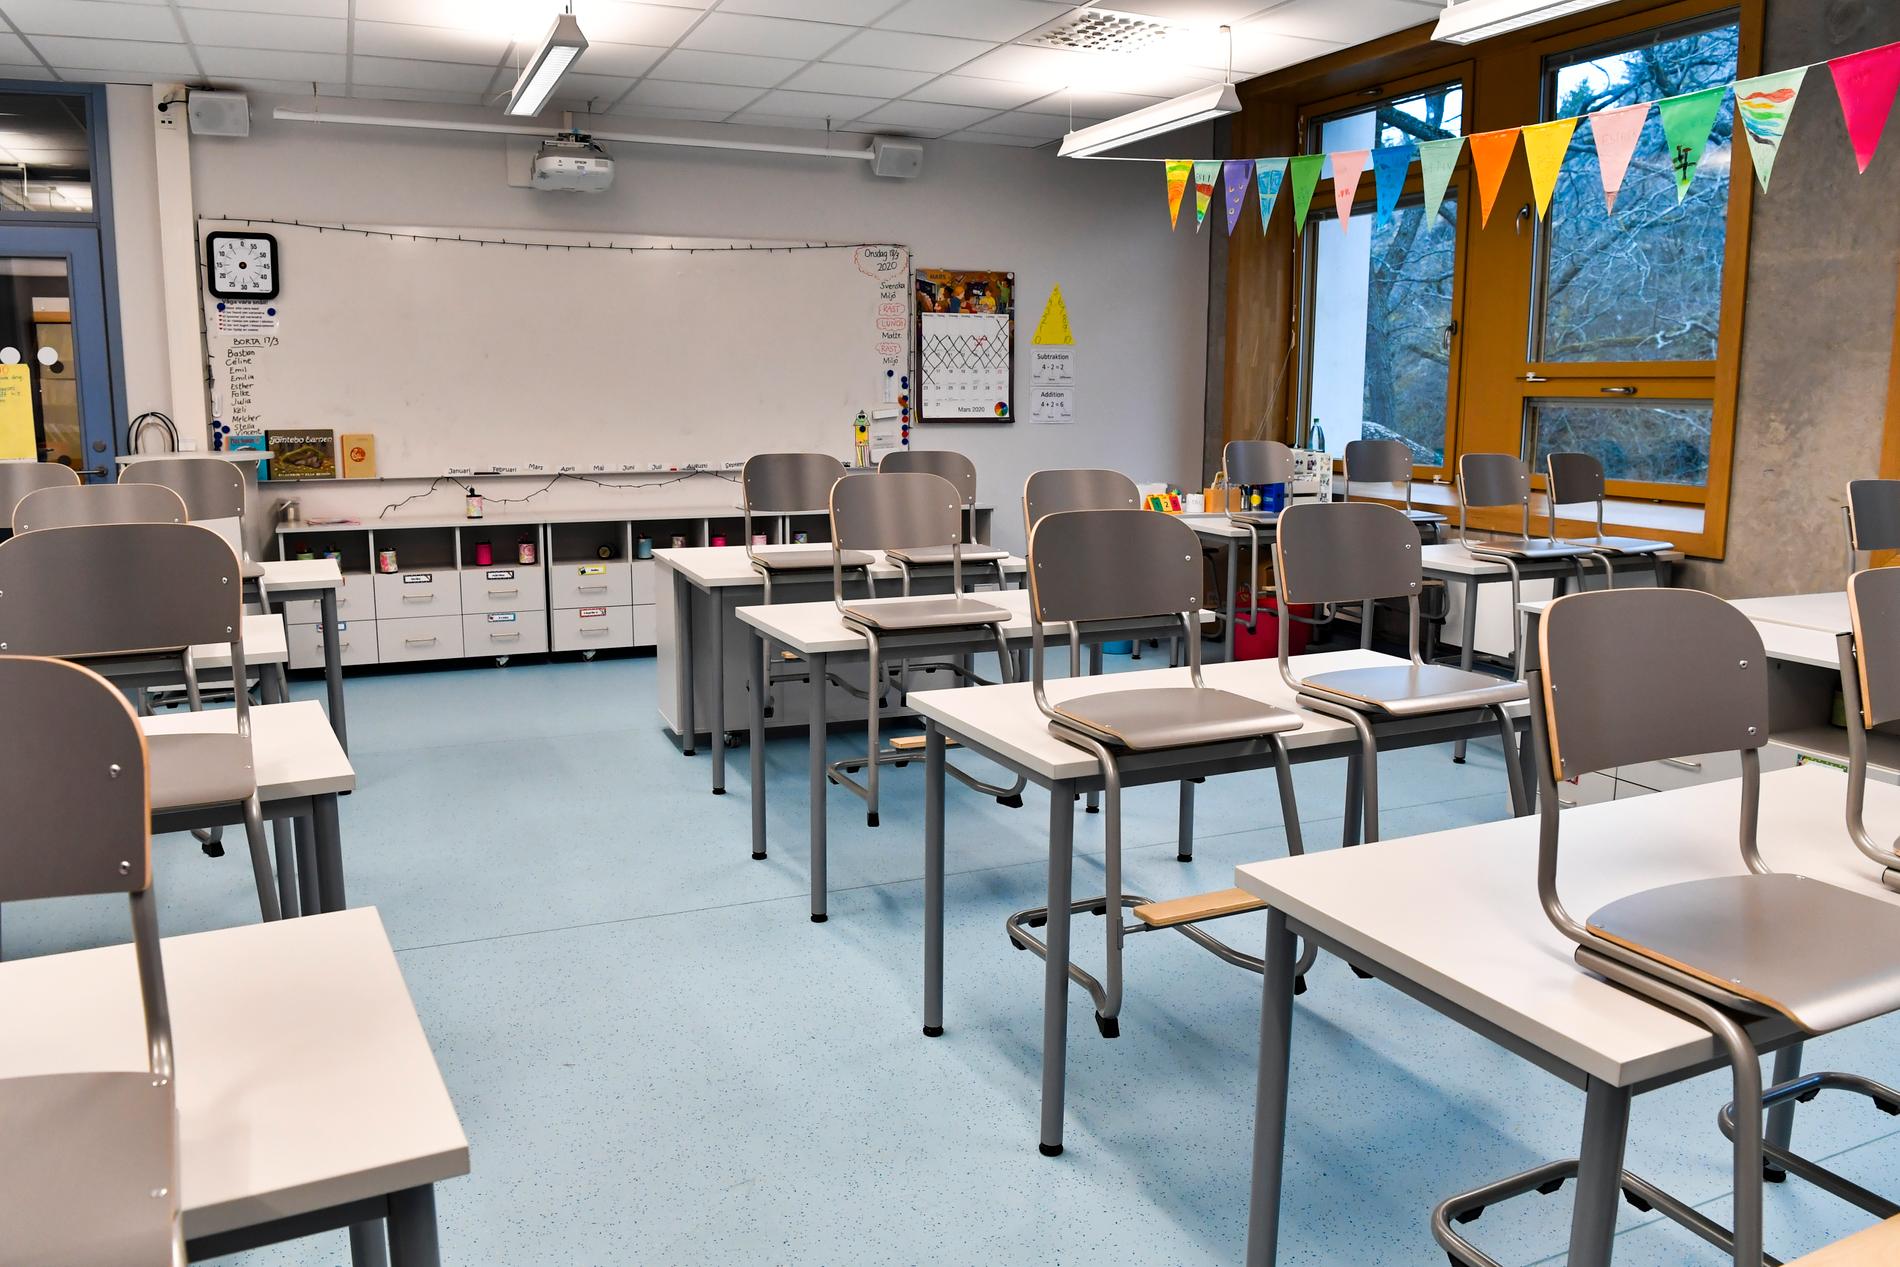 I Mönsterås har en skola fått akutstänga efter ett större utbrott.